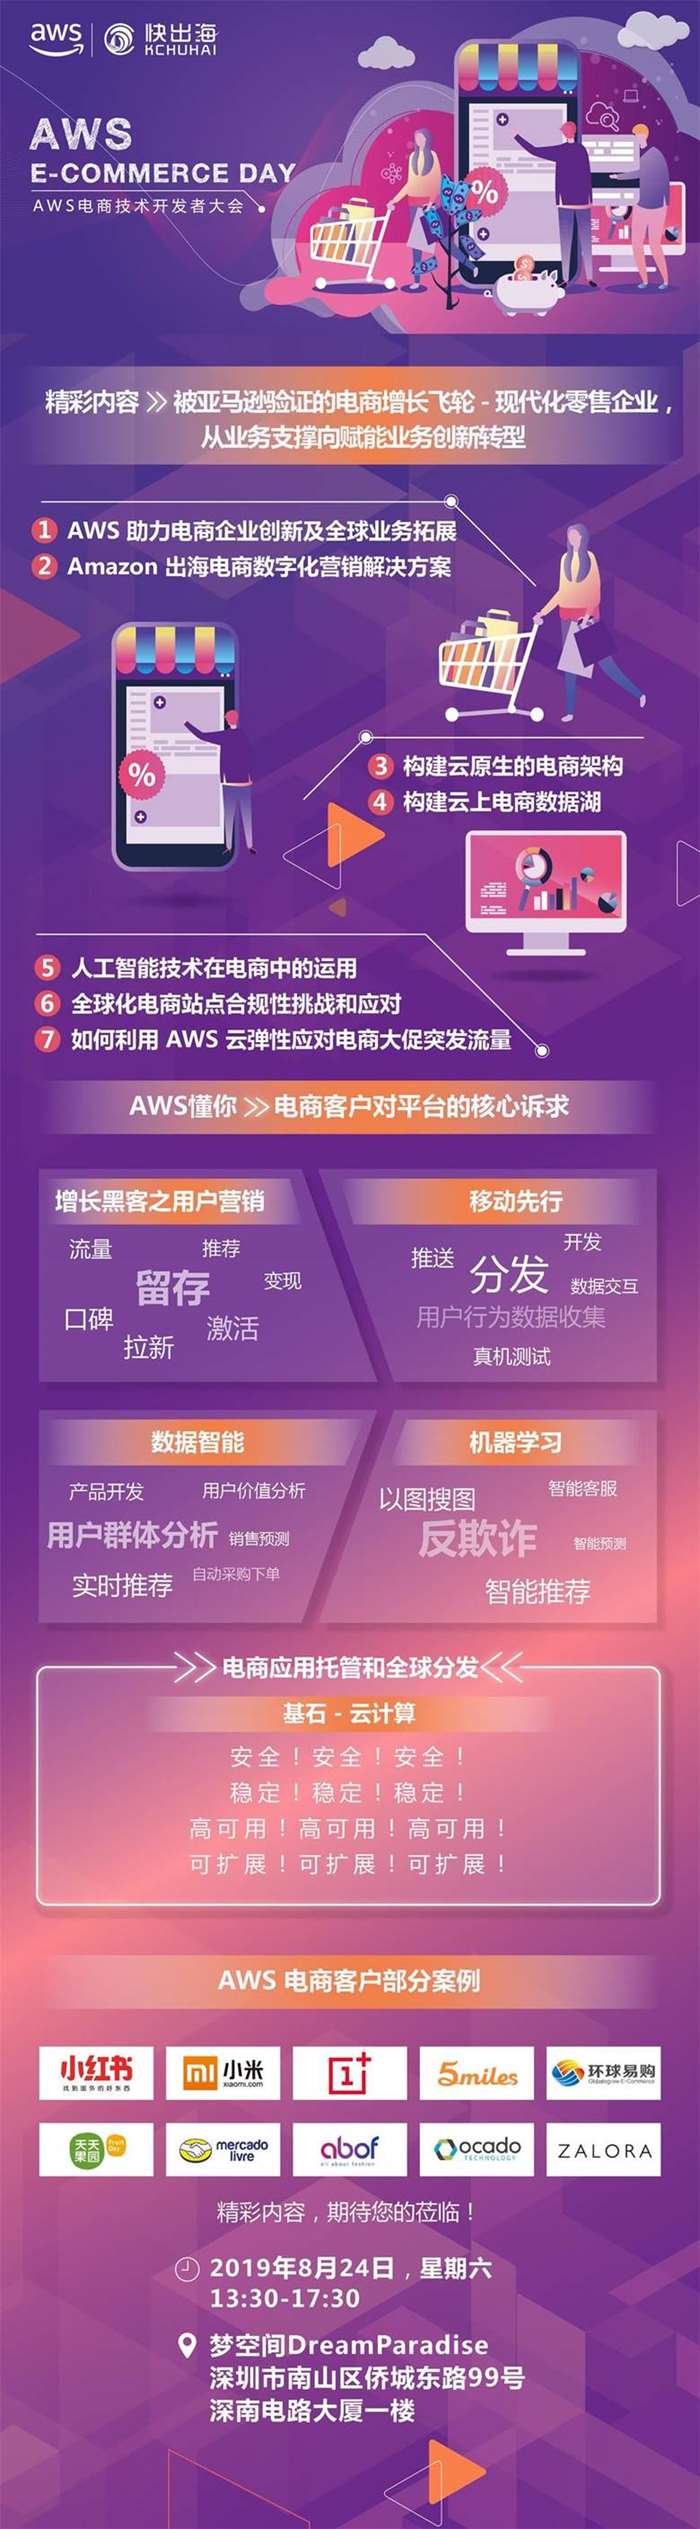 深圳站第一轮微信海报-快出海.jpg